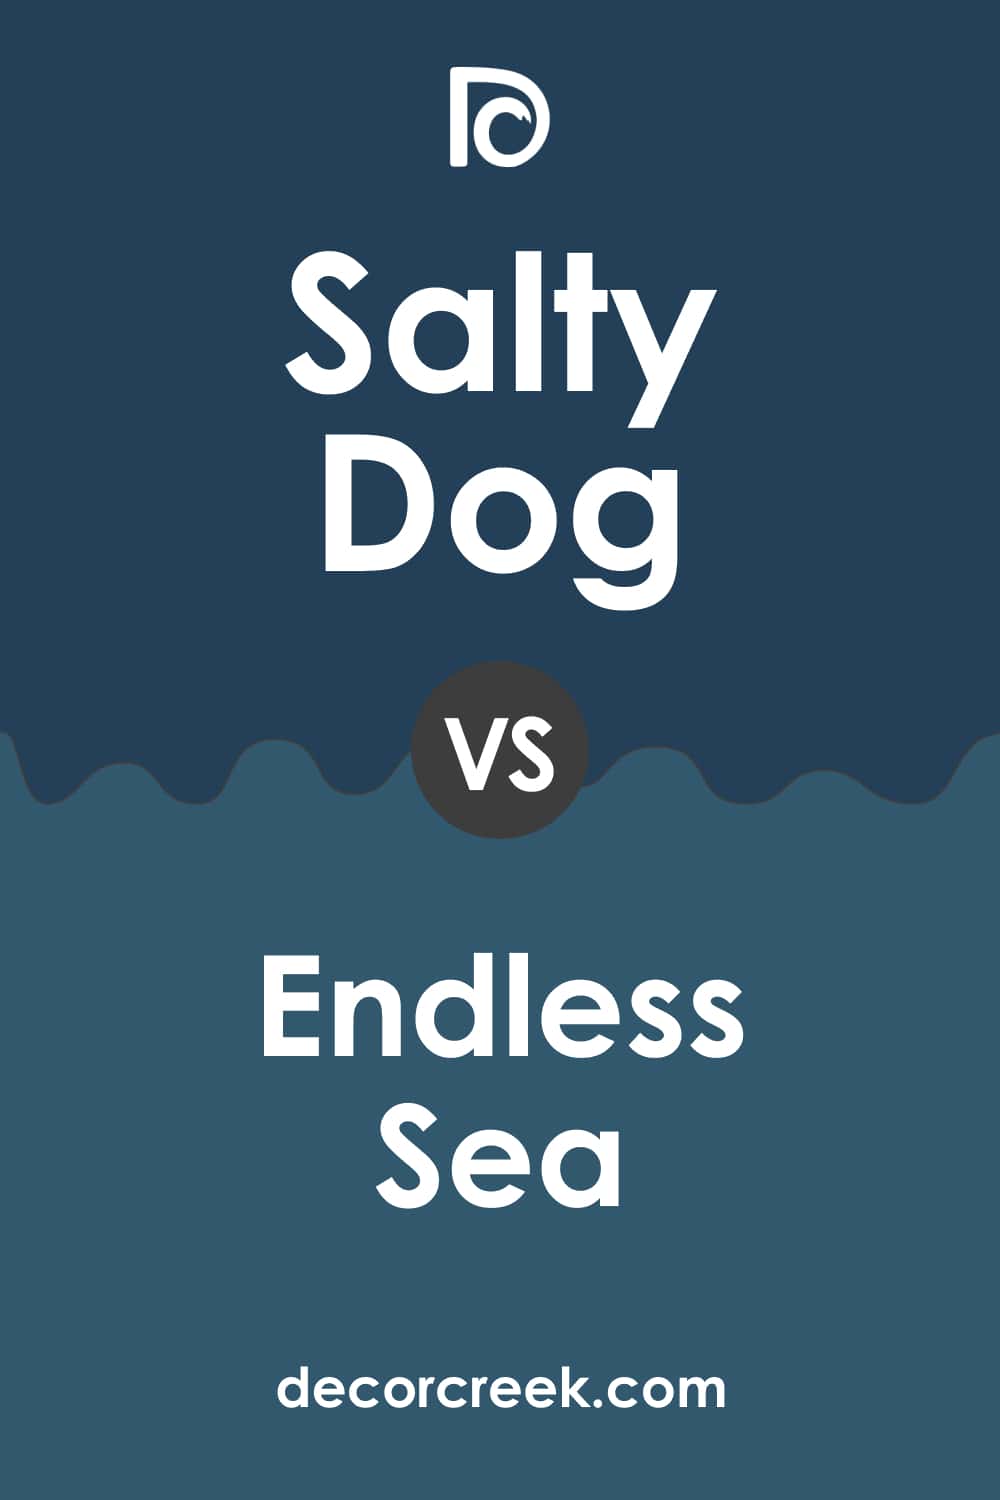 Salty Dog vs Endless Sea